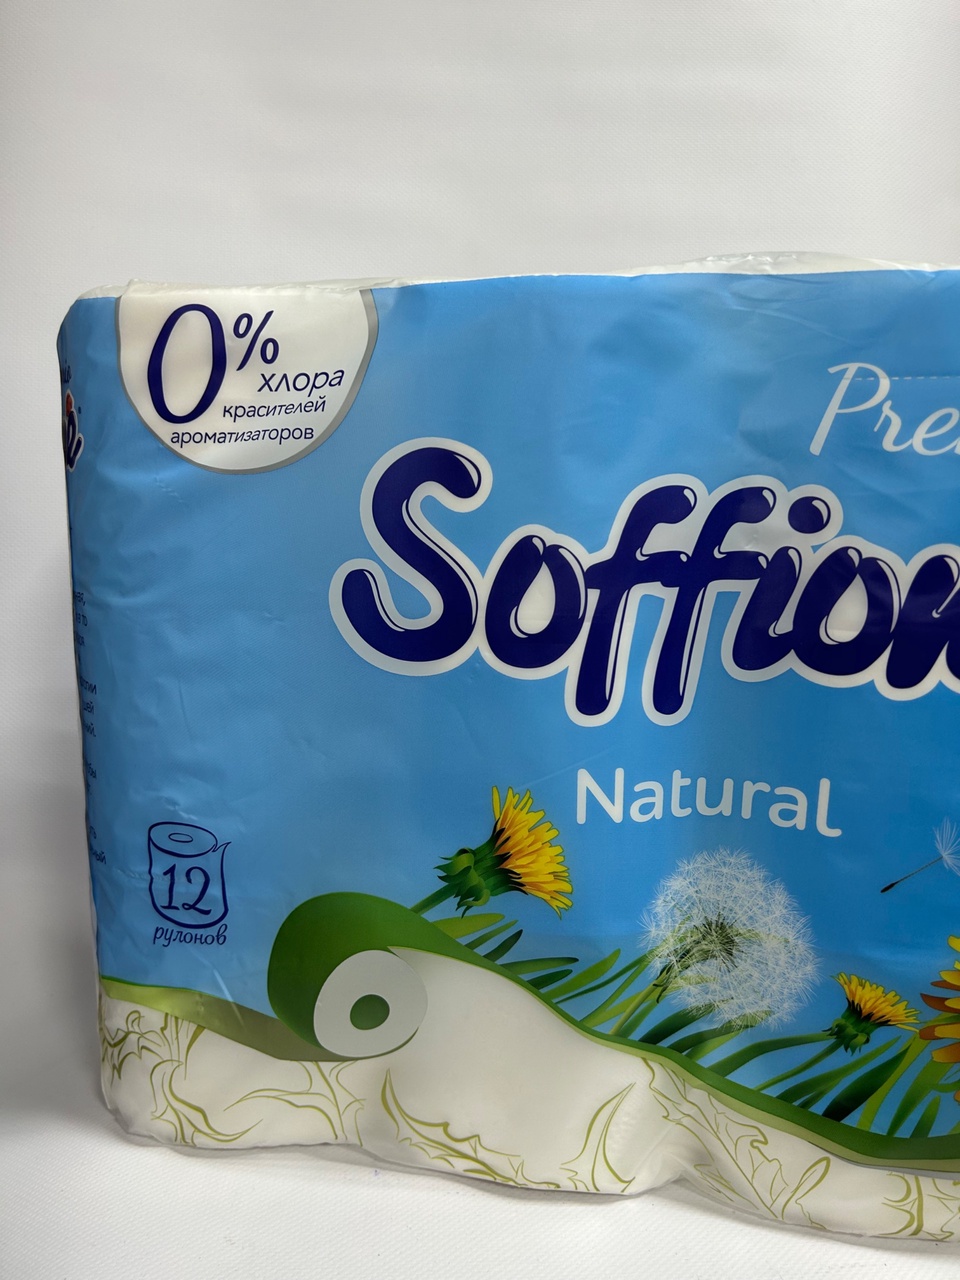 Туалетная бумага Soffione «Натурель» 12шт - 250 ₽, заказать онлайн.